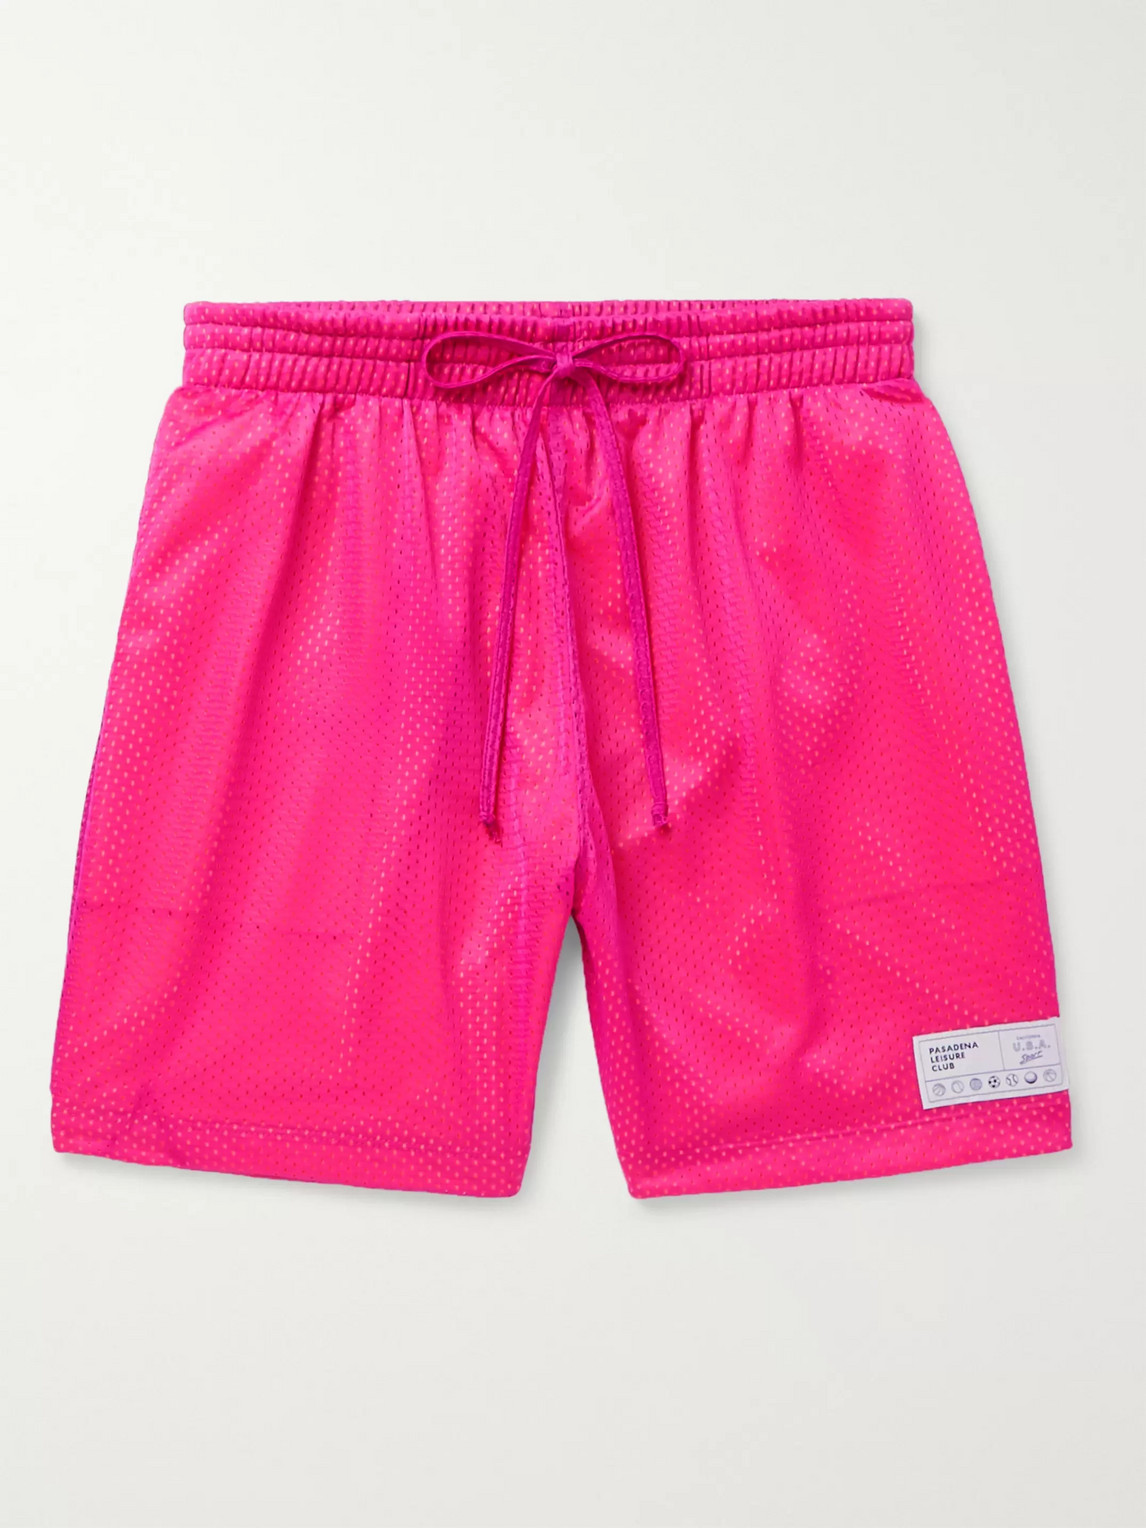 Pasadena Leisure Club Mesh Drawstring Shorts In Pink